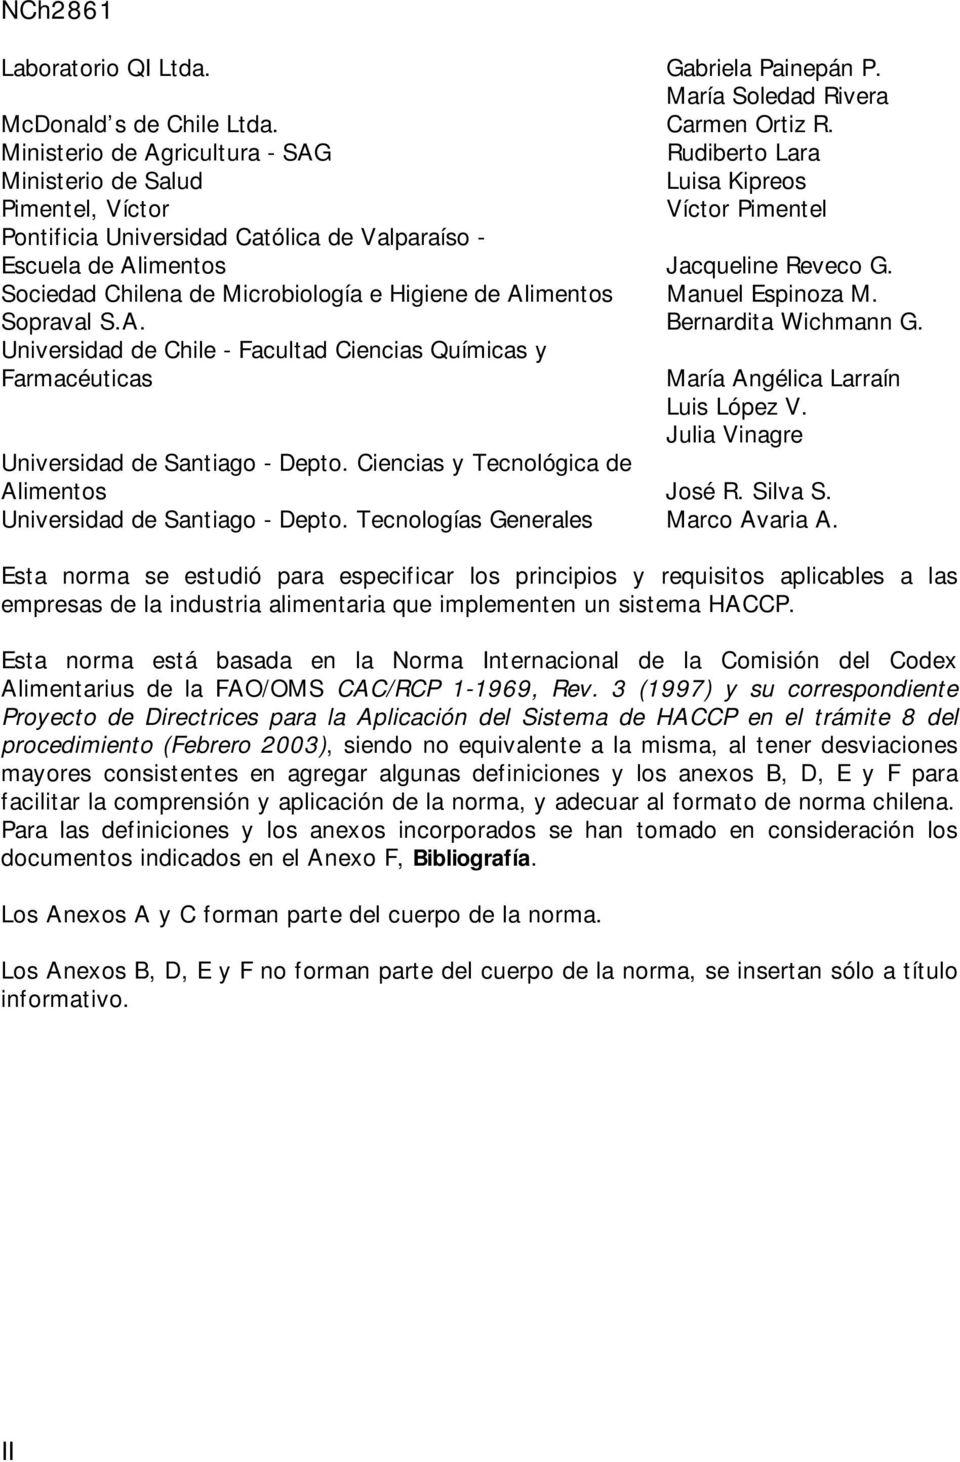 Reveco G. Sociedad Chilena de Microbiología e Higiene de Alimentos Manuel Espinoza M. Sopraval S.A. Bernardita Wichmann G.